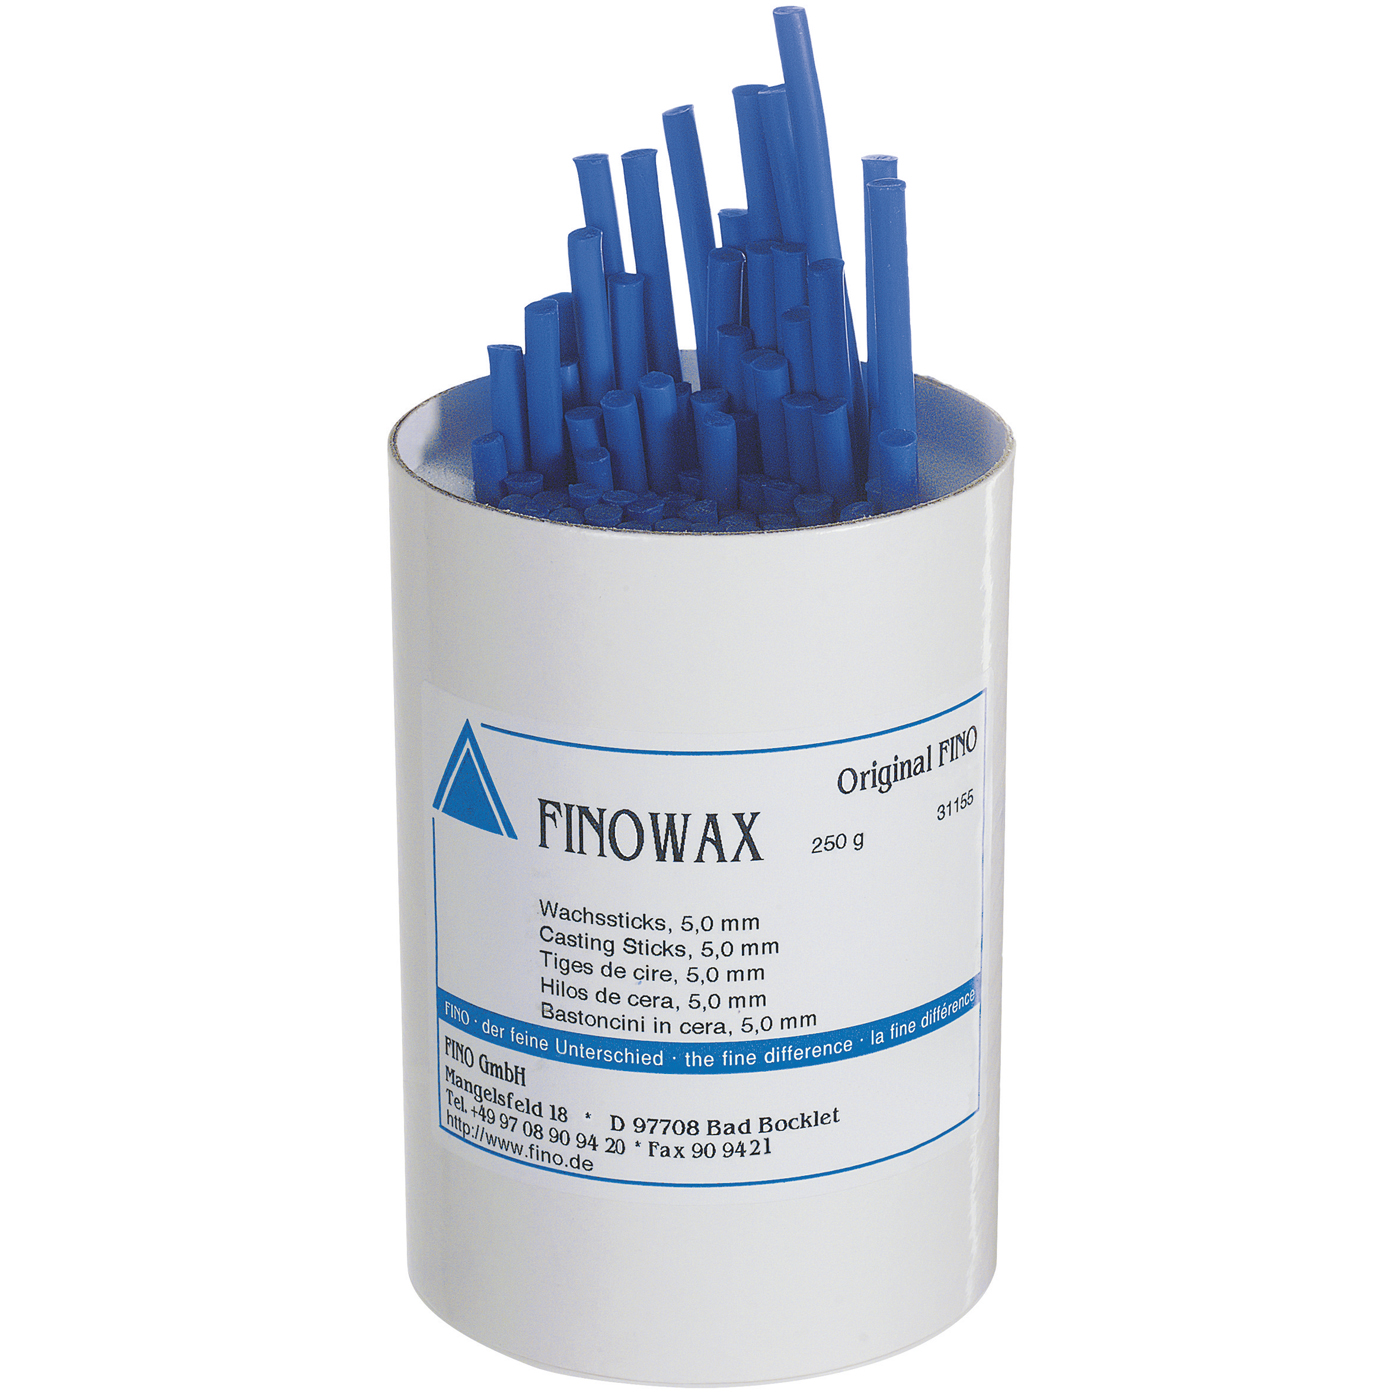 FINOWAX Wax Sticks, ø 5.0 mm, Blue - 250 g